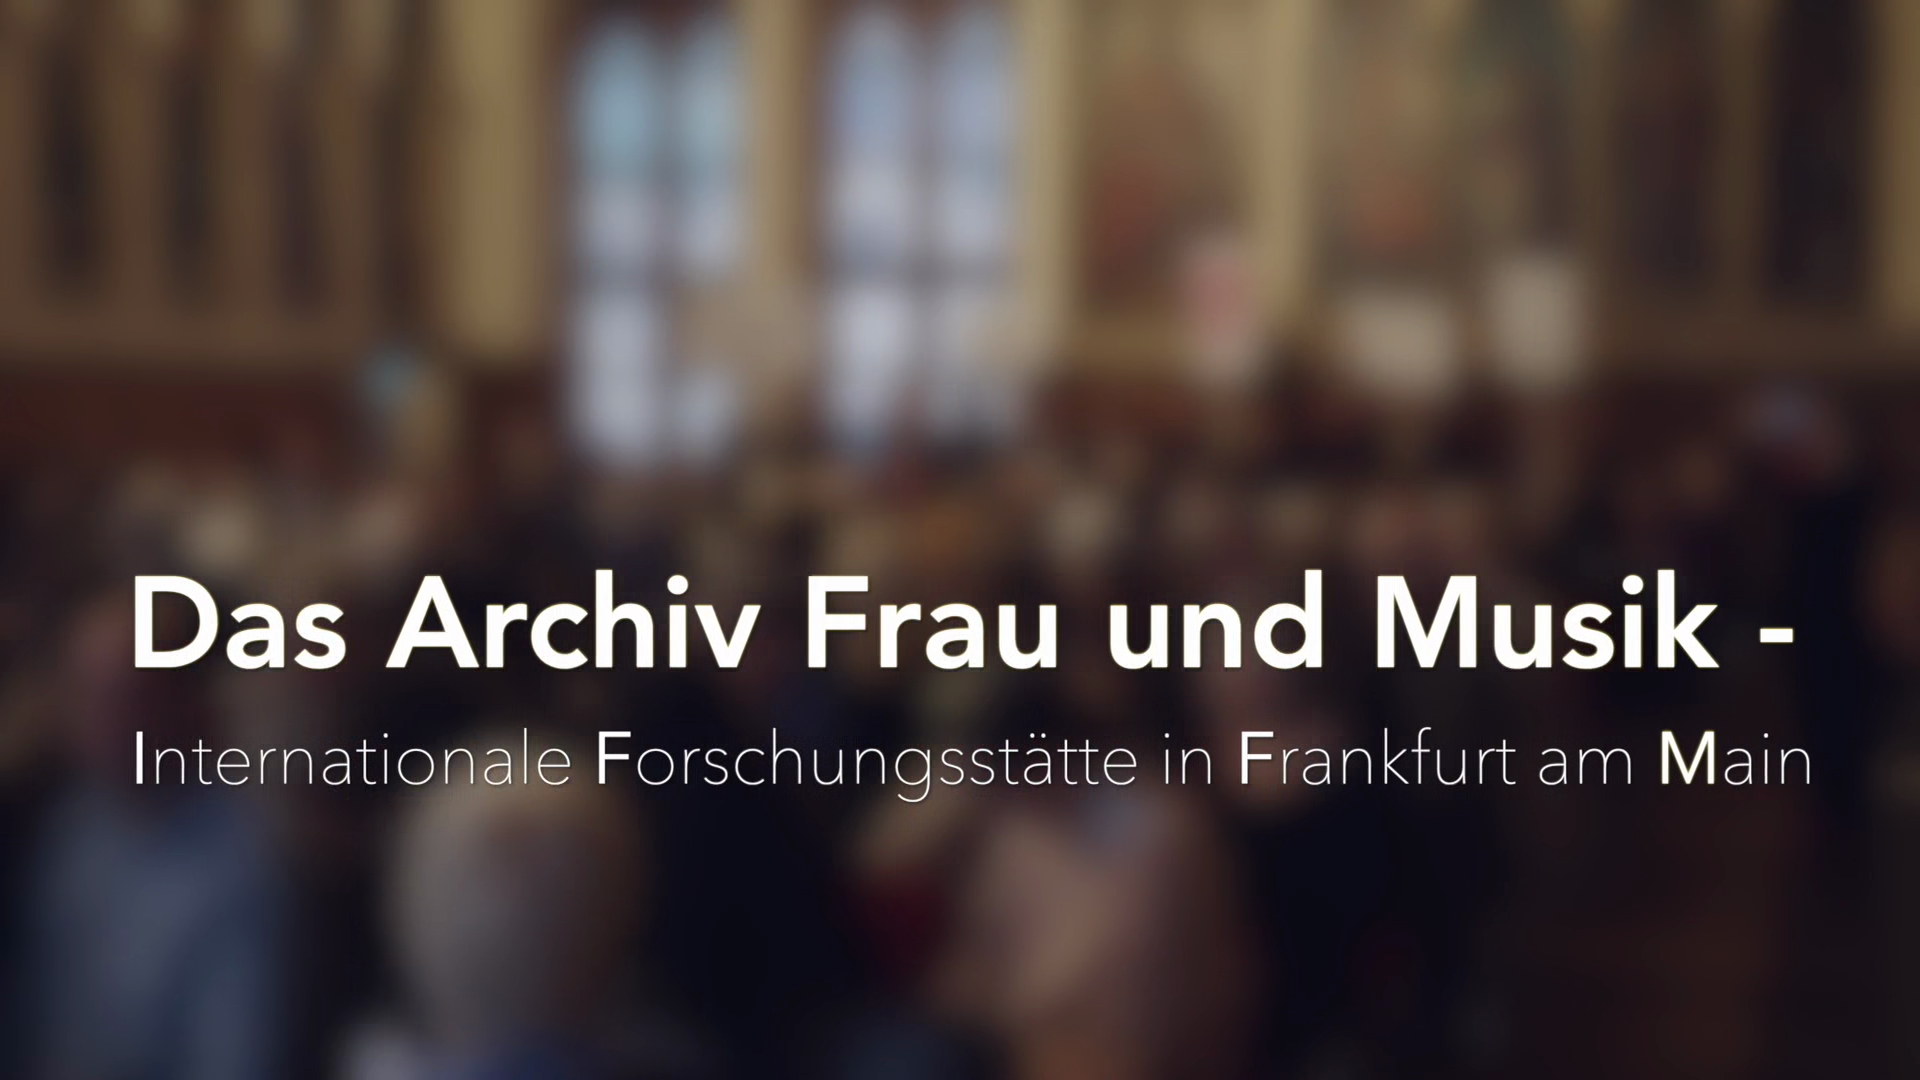 Archiv Frau und Musik - Internationale Forschungsstätte in Frankfurt am Main